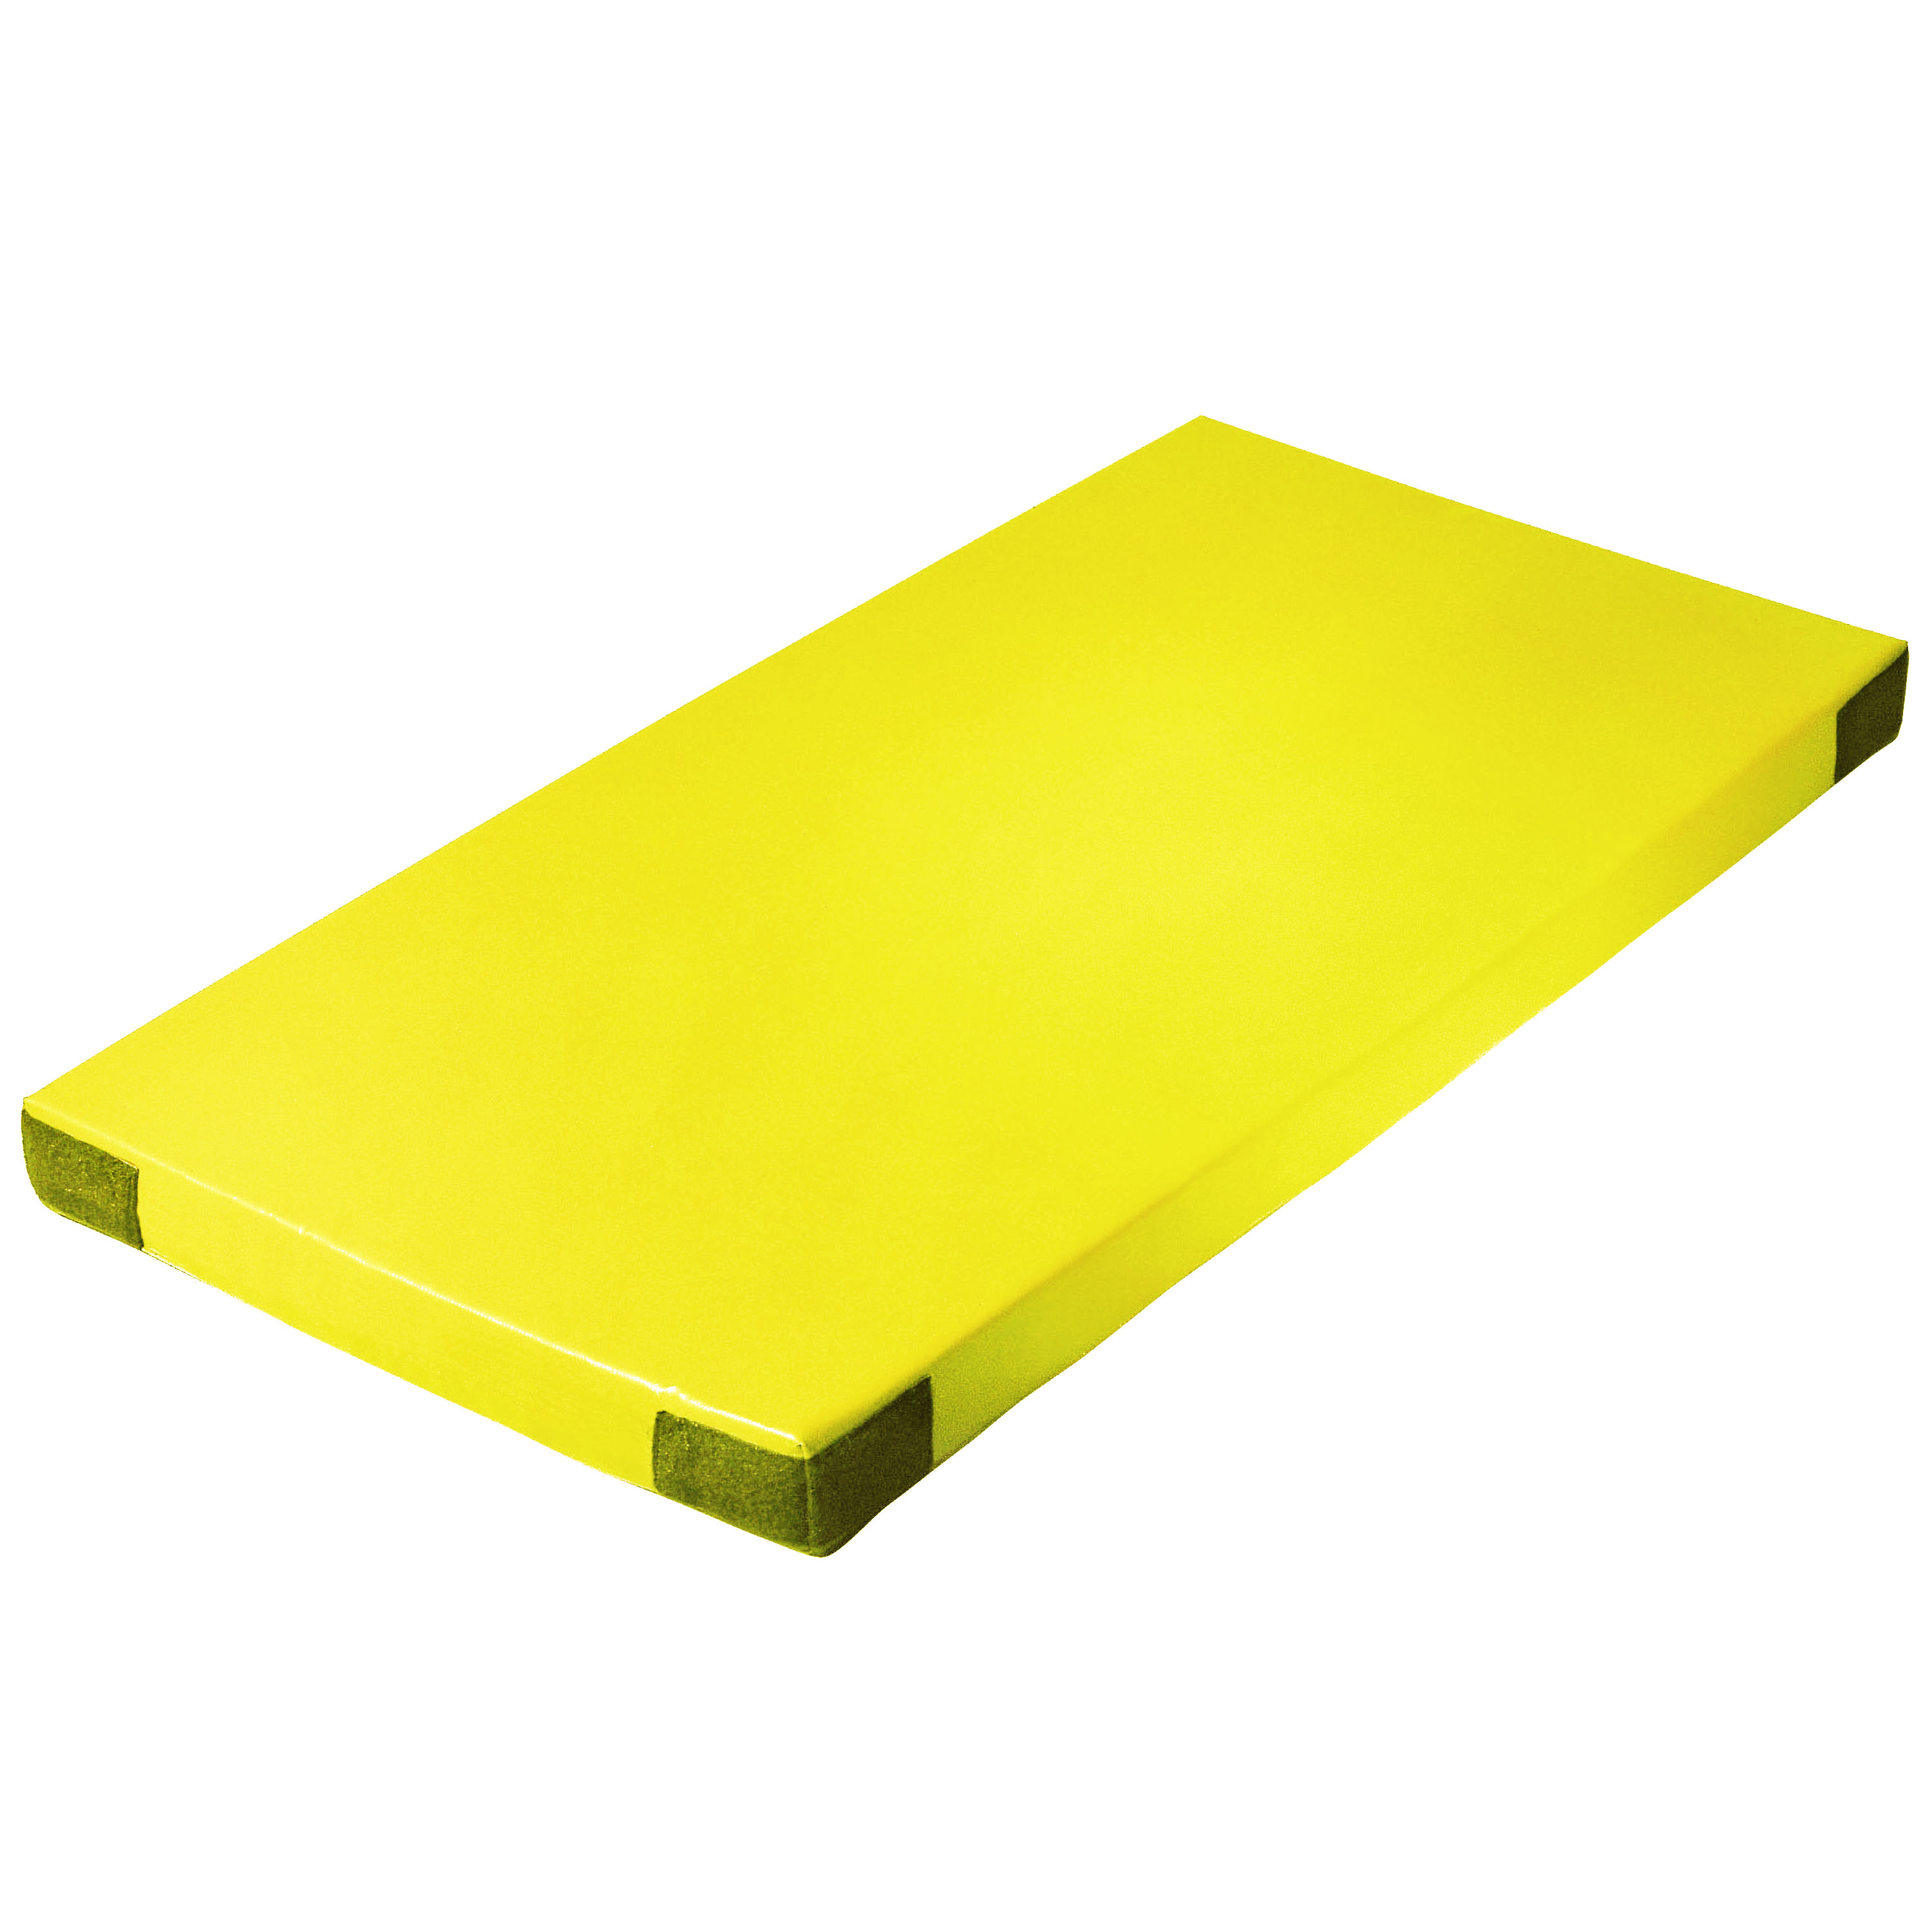 Super-Leichtturnmatte Klettecken 200 x 125 x 8 cm, gelb